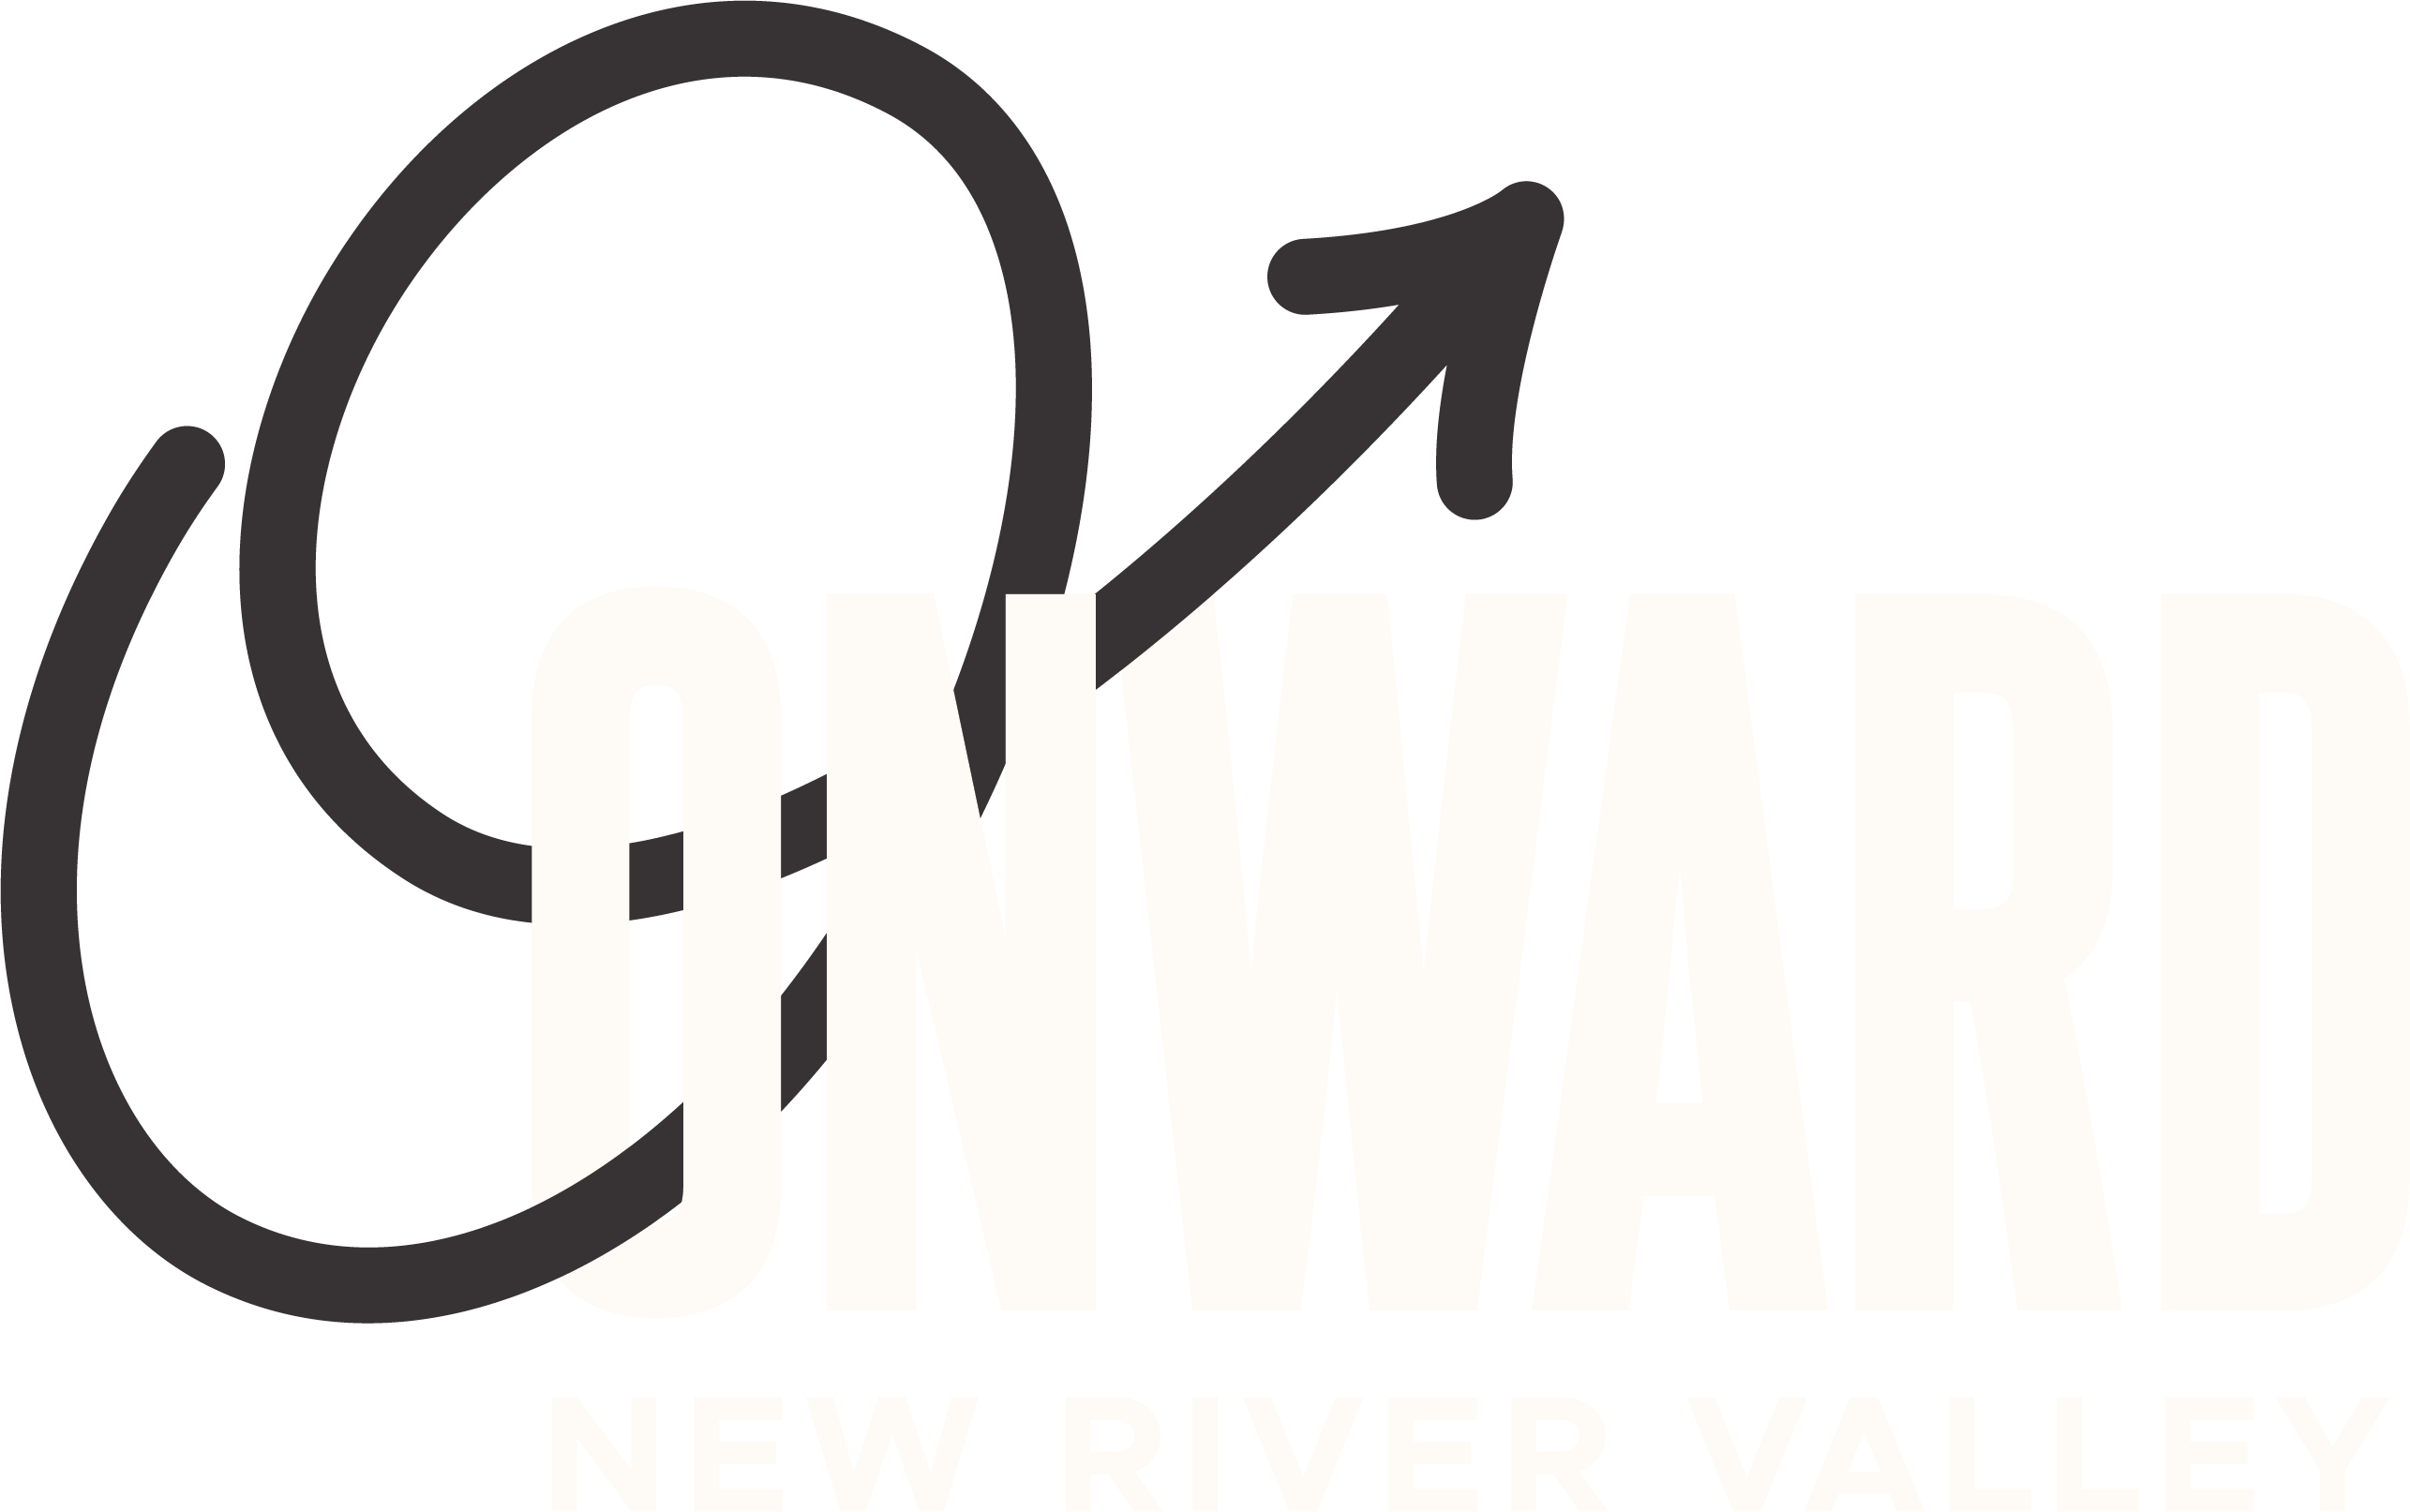 Onward New River Valley - Onward New River Valley (2571x1613)